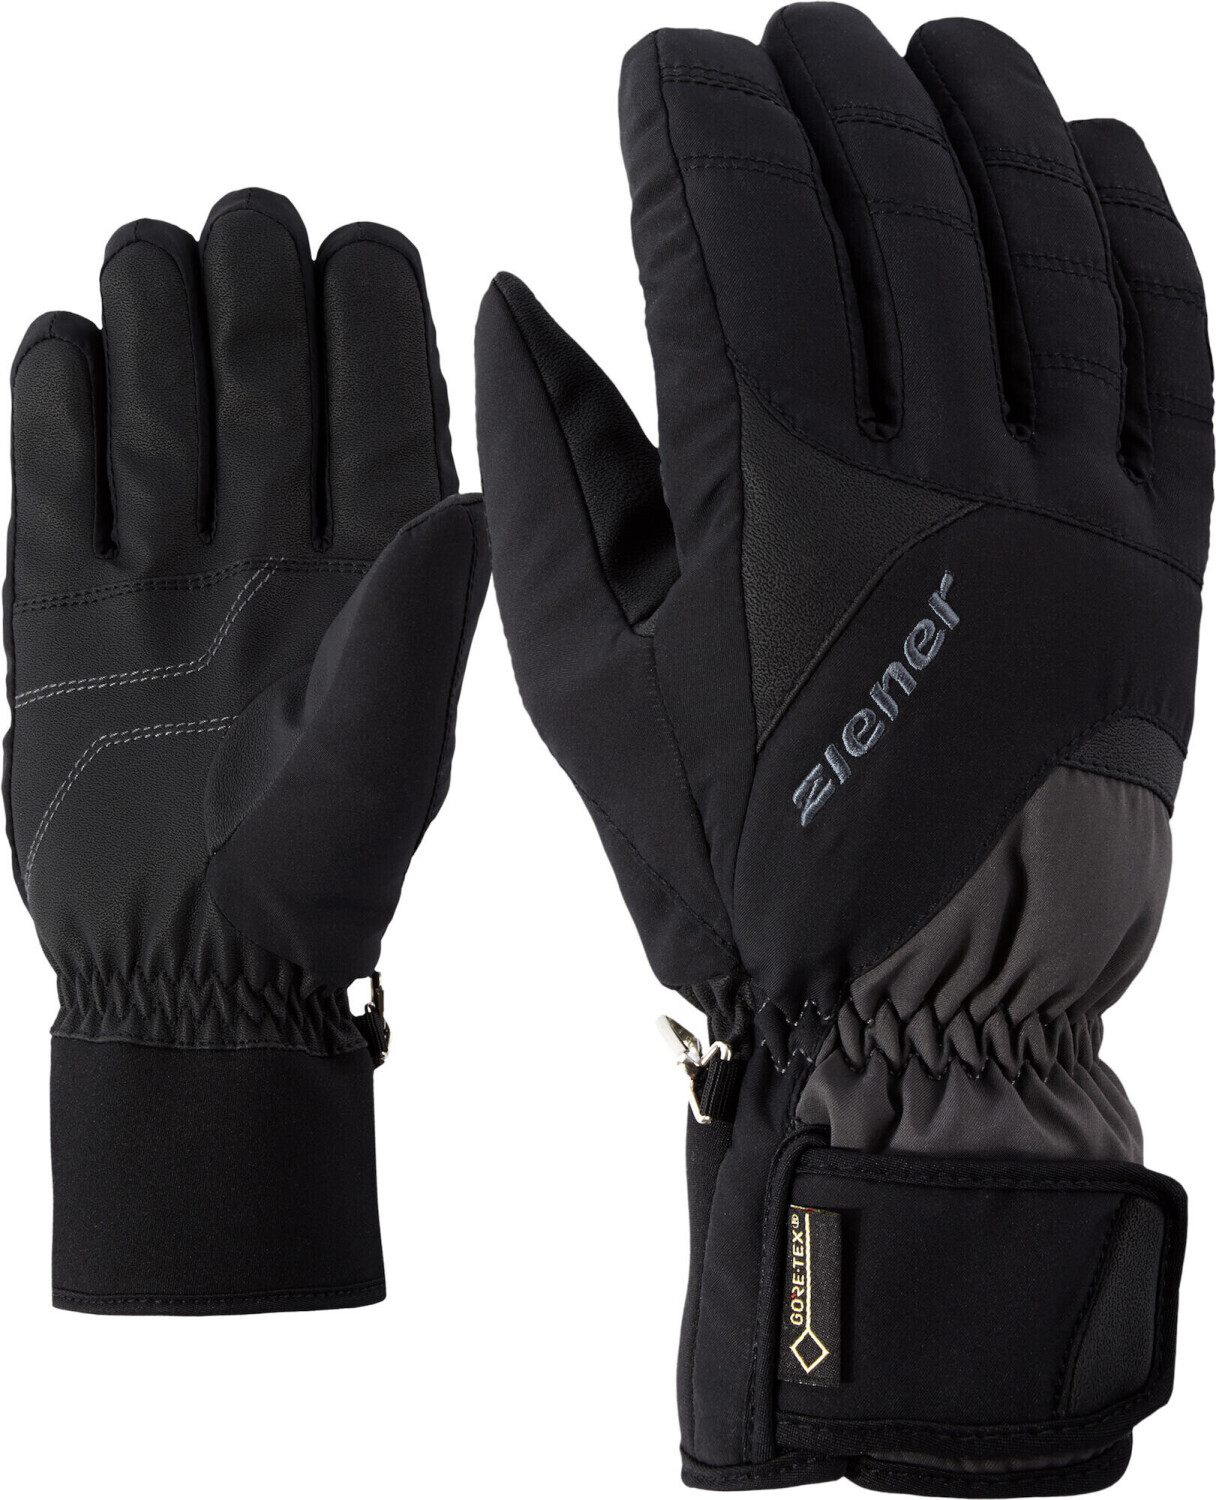 Ziener Guffert GTX Glove Ski Alpine graphite.black ab 42,94 € |  Preisvergleich bei